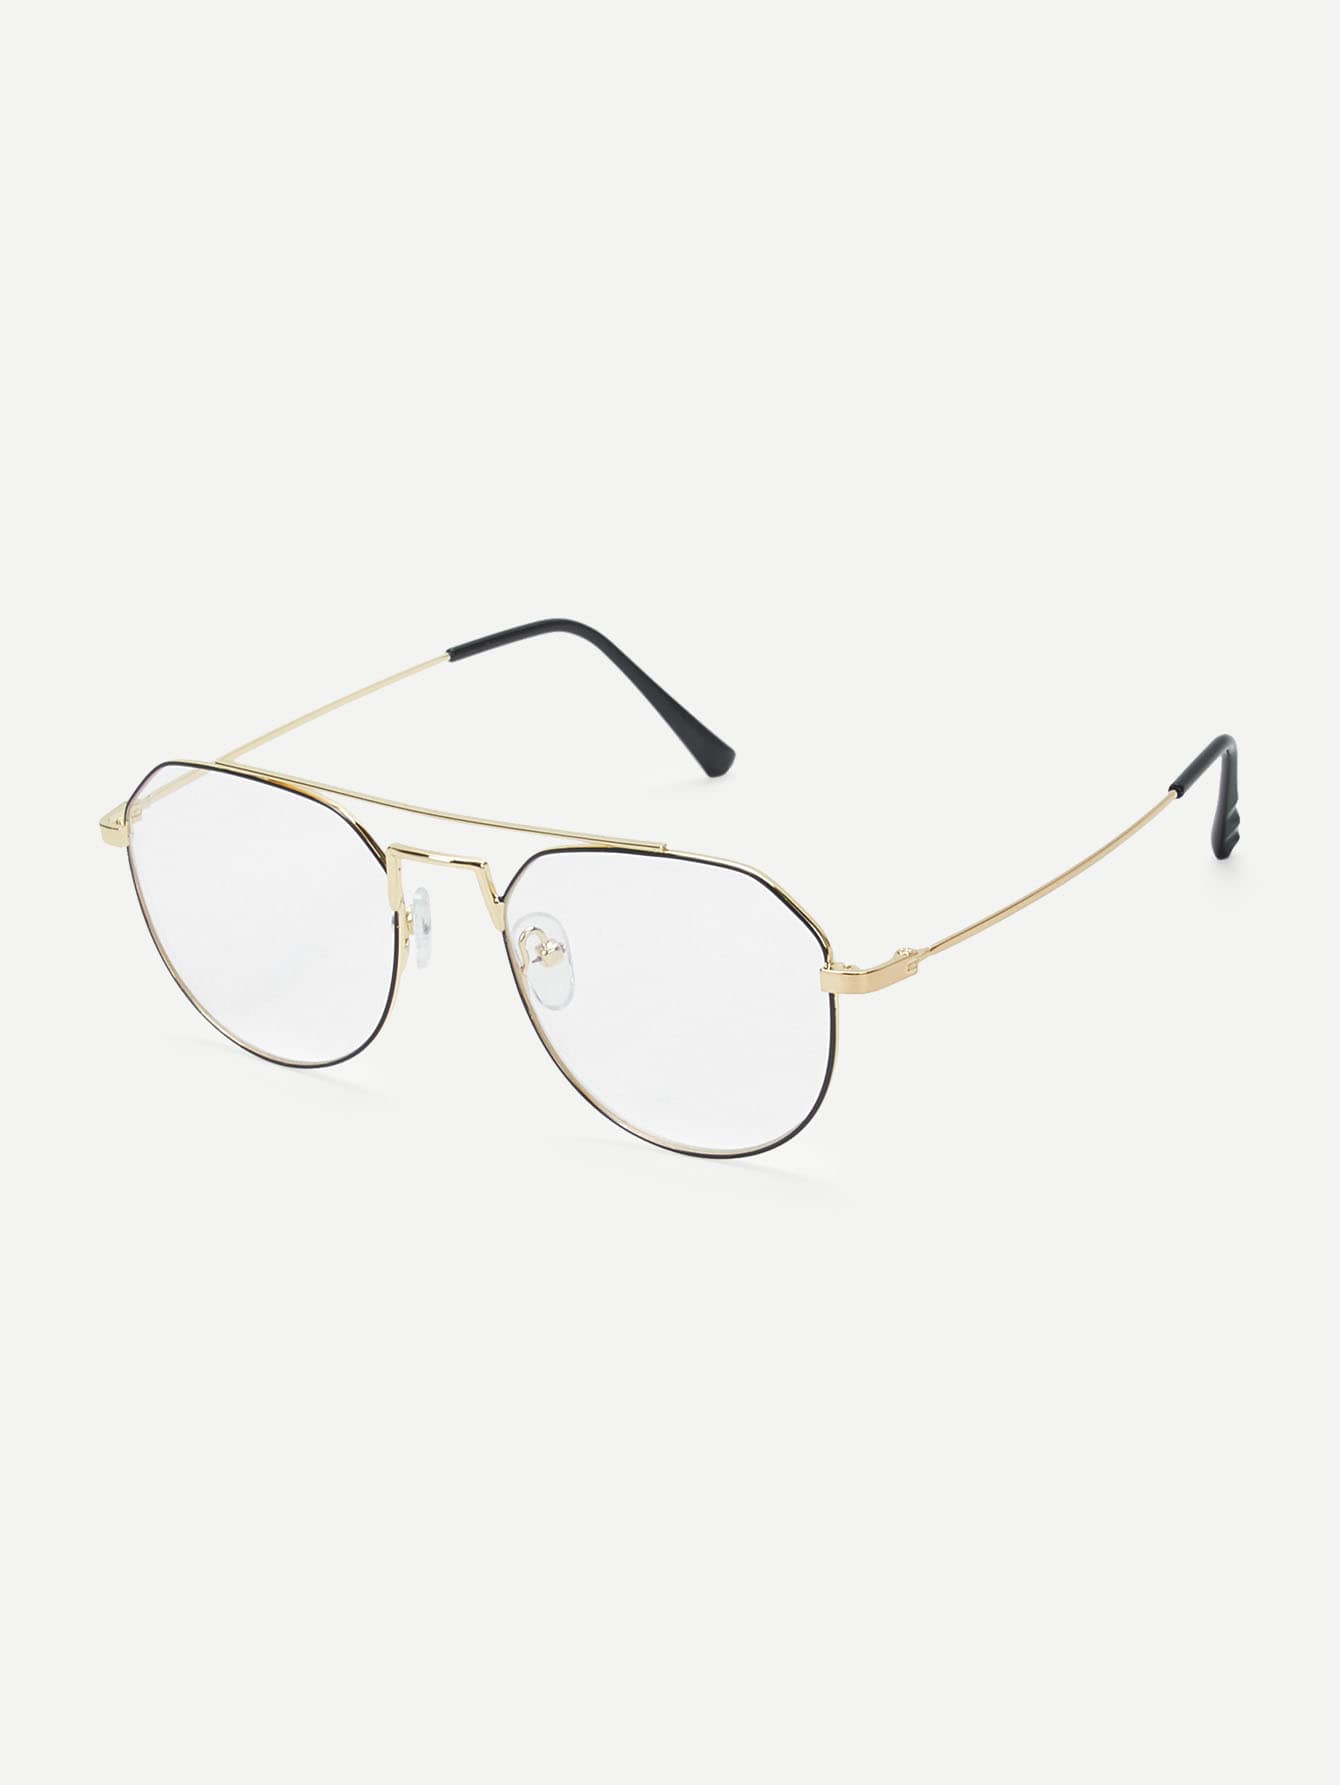 Gold Top Bar Metal Frame Glasses